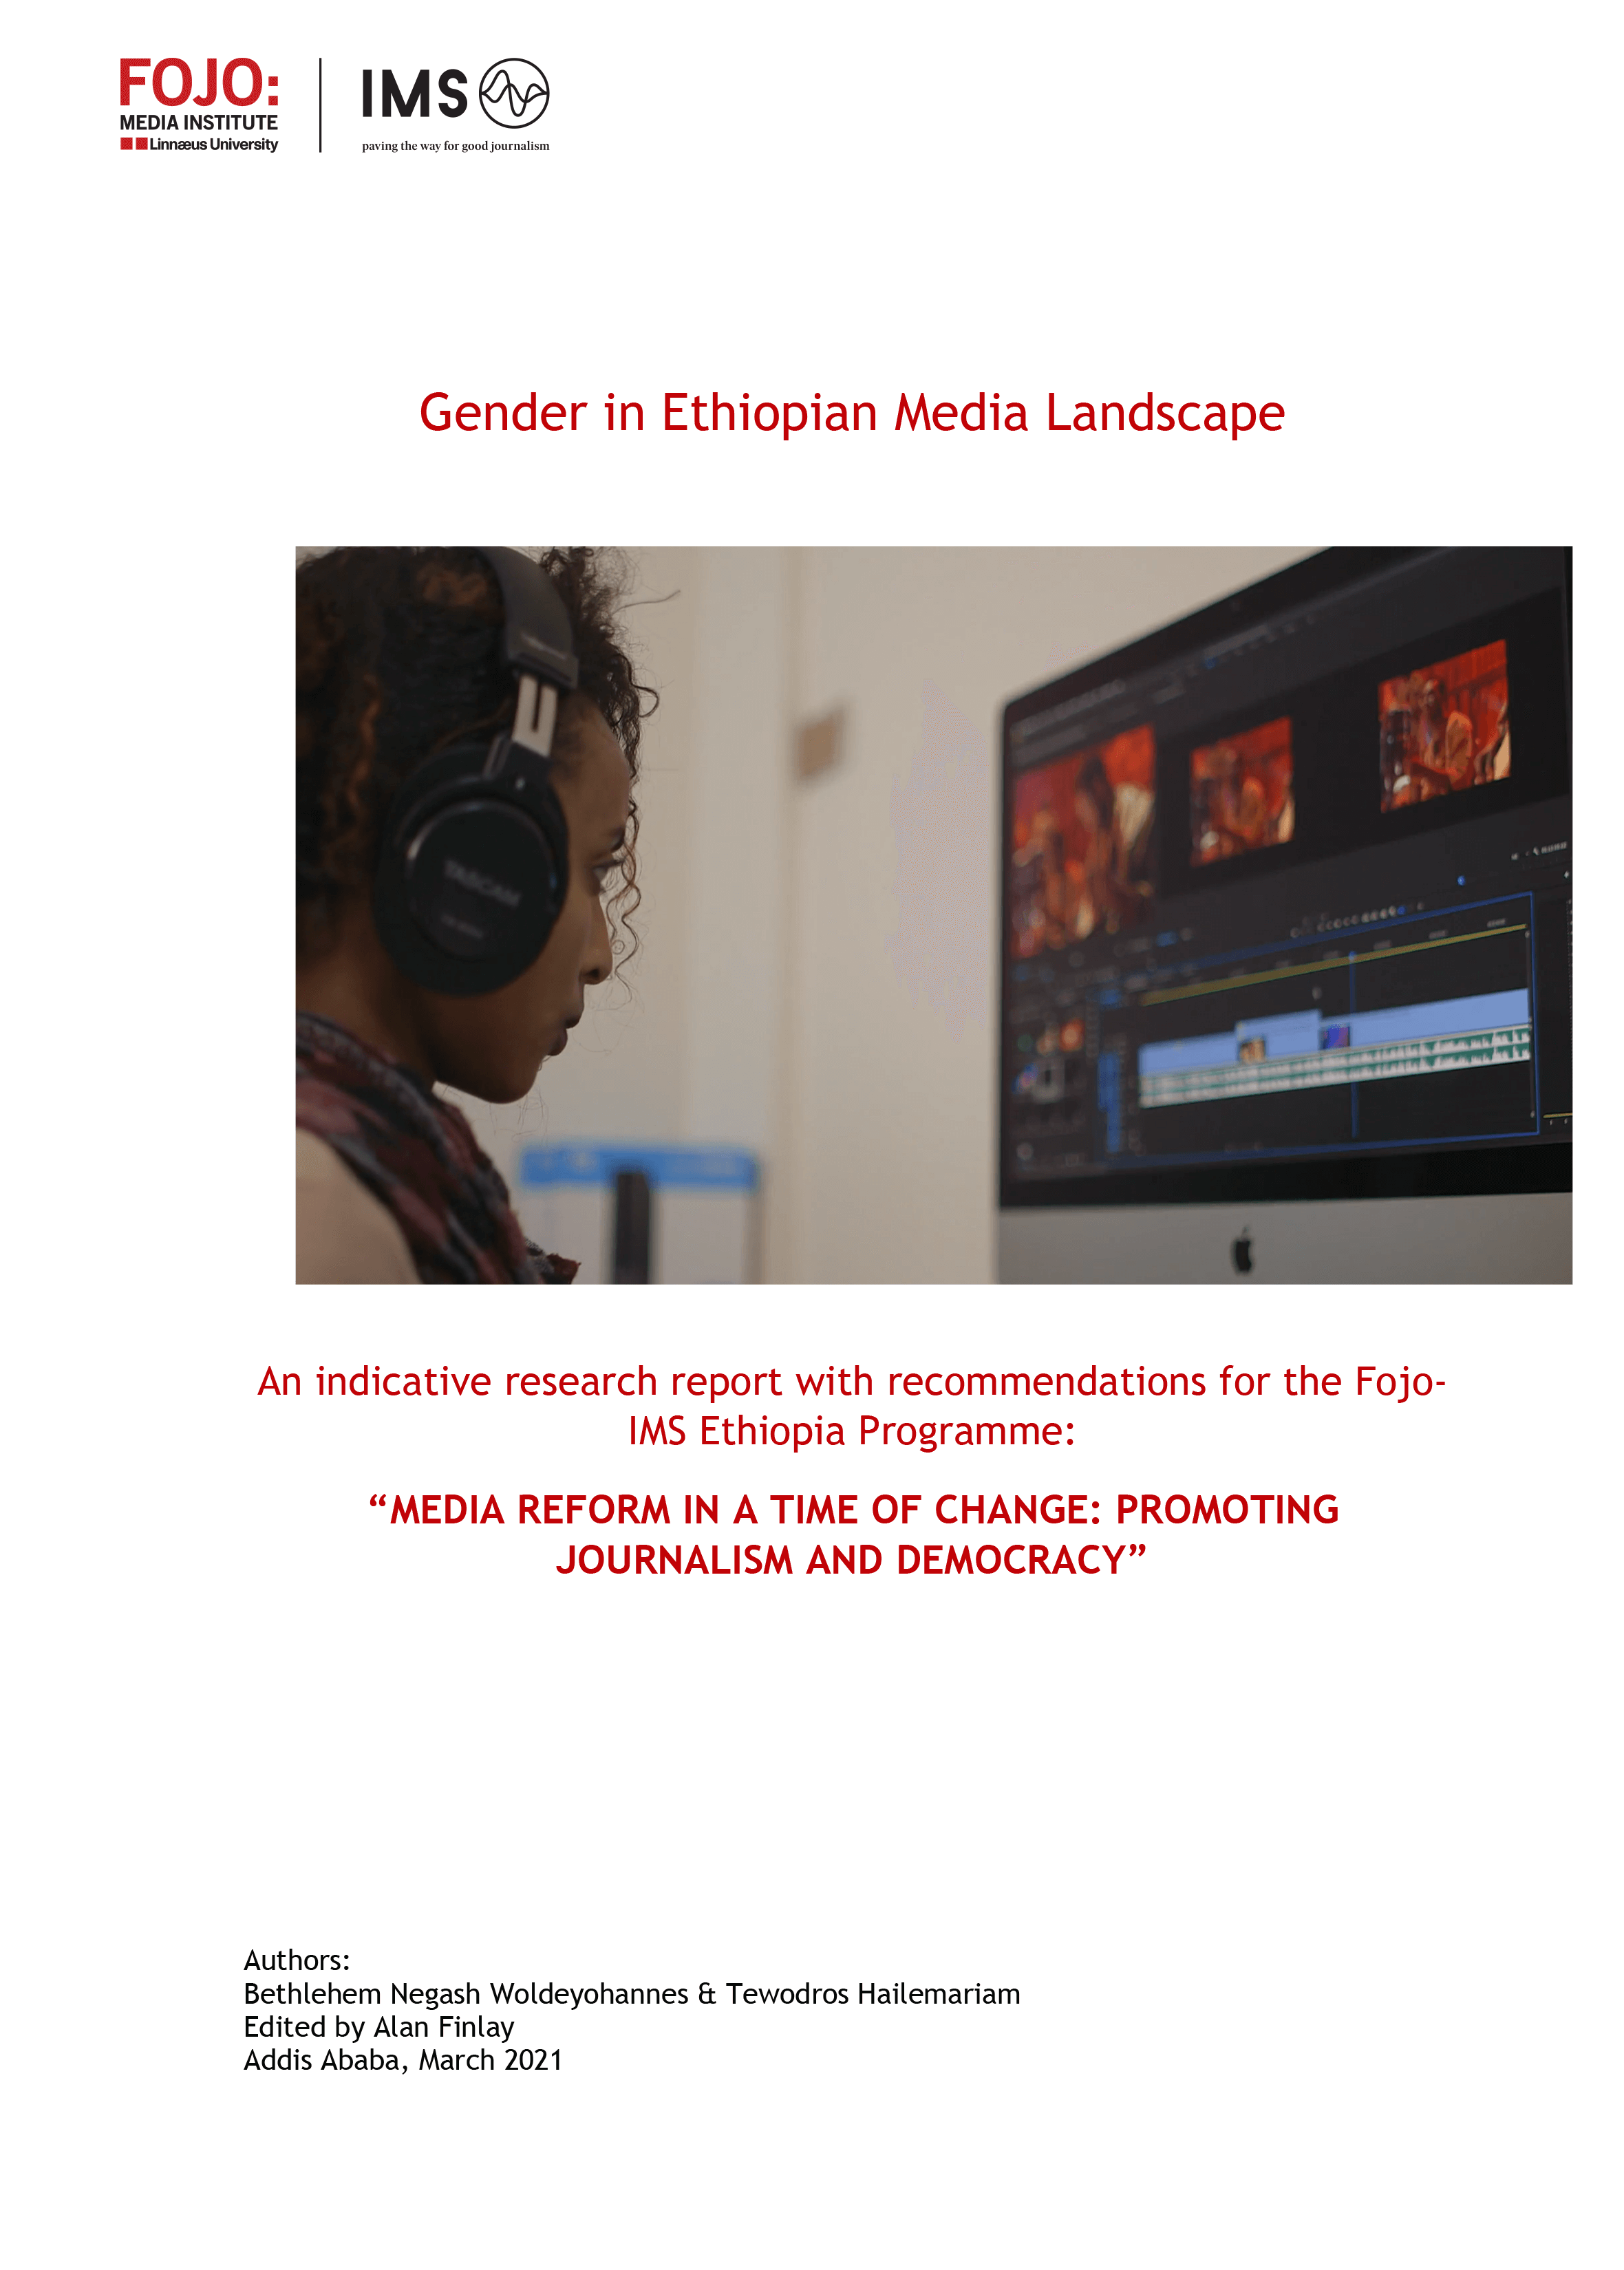 Gender in Ethiopian media landscape